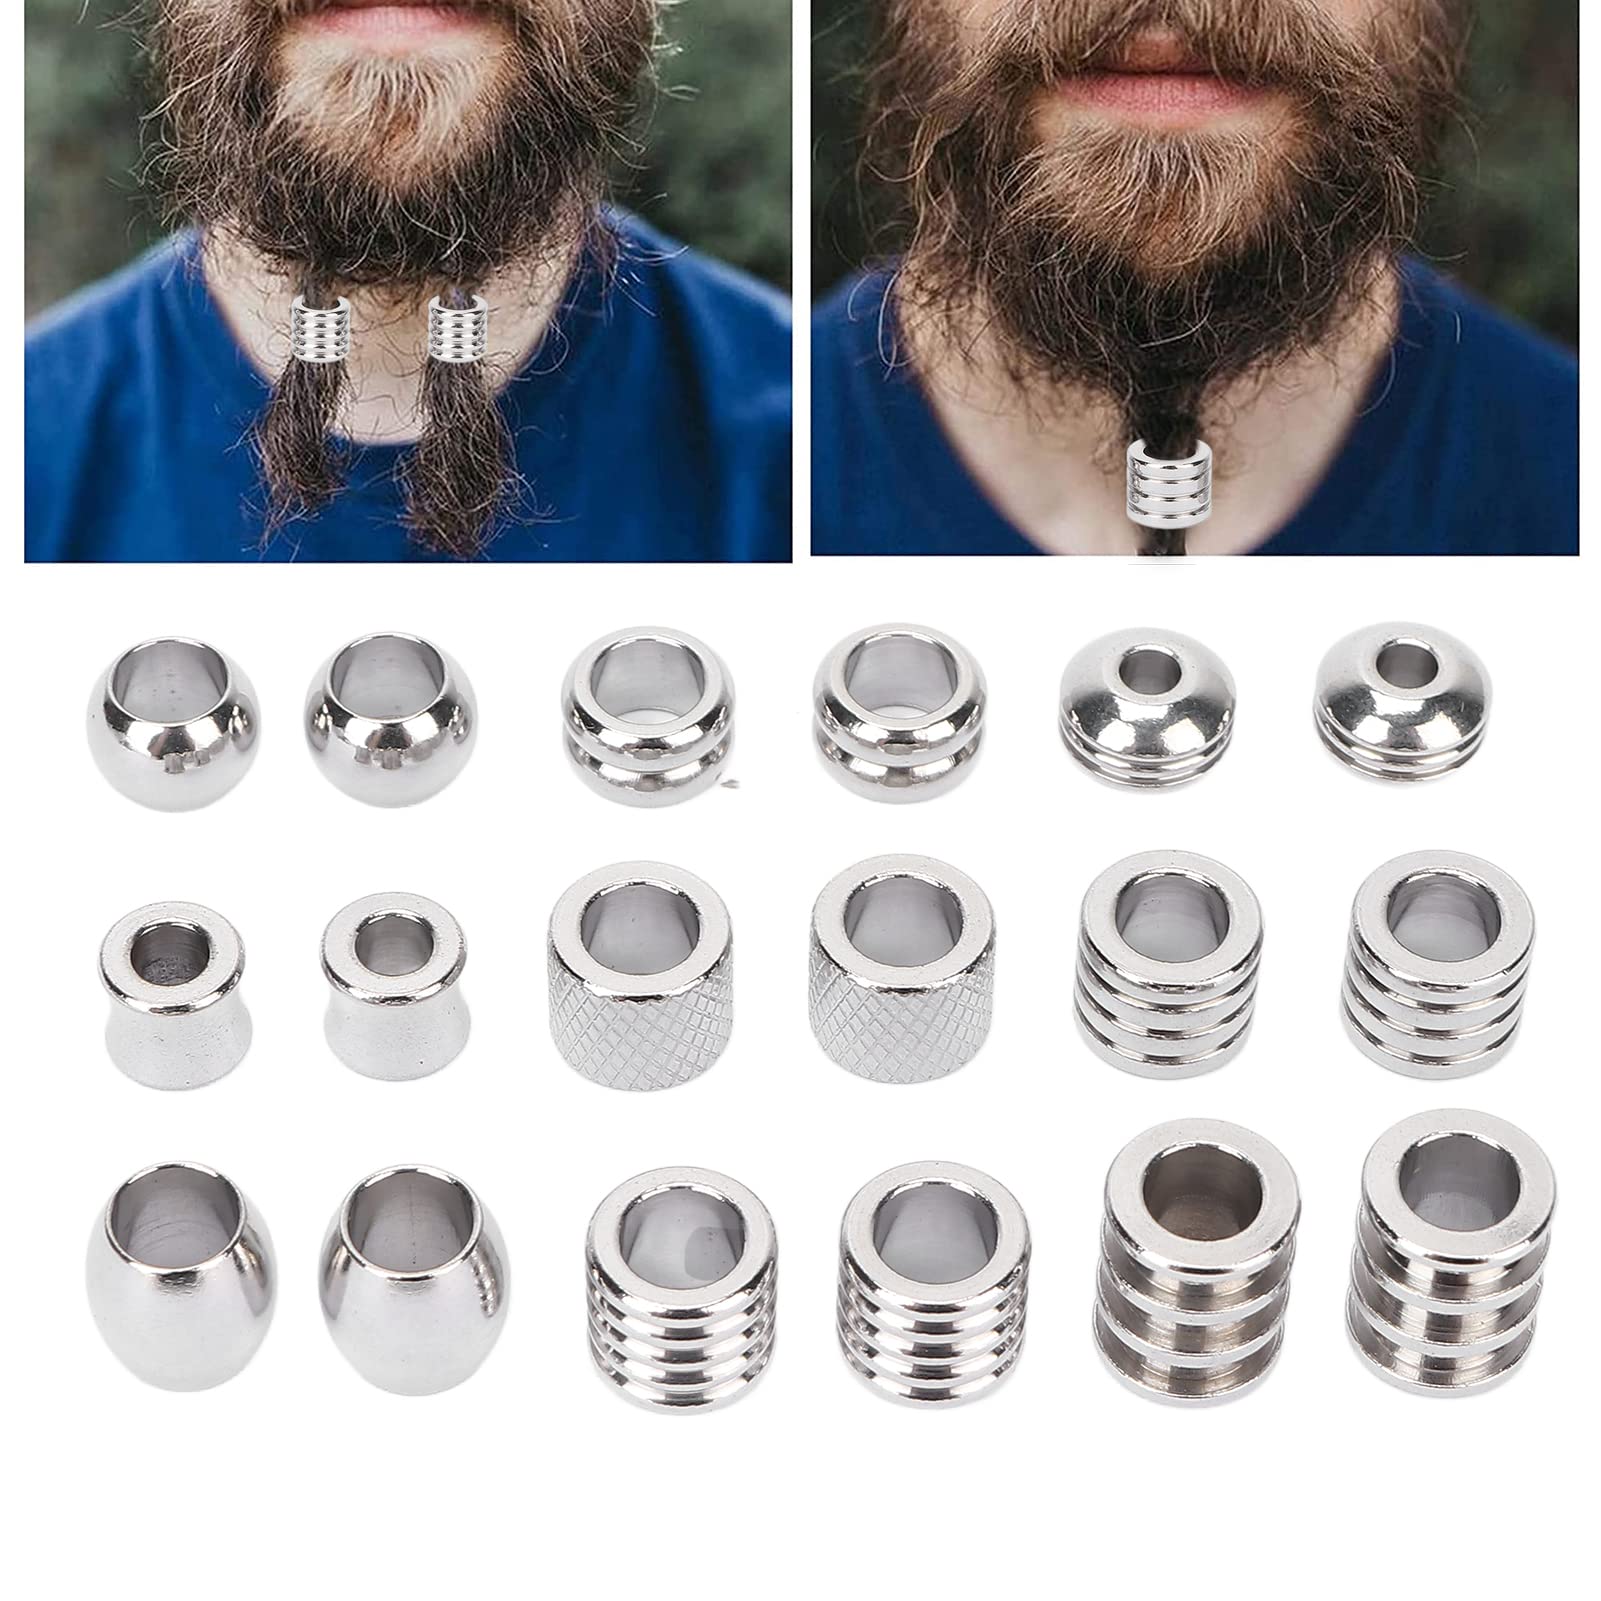 Mucking around with some beard beads  Beard jewelry, Beard beads, Viking  beard styles